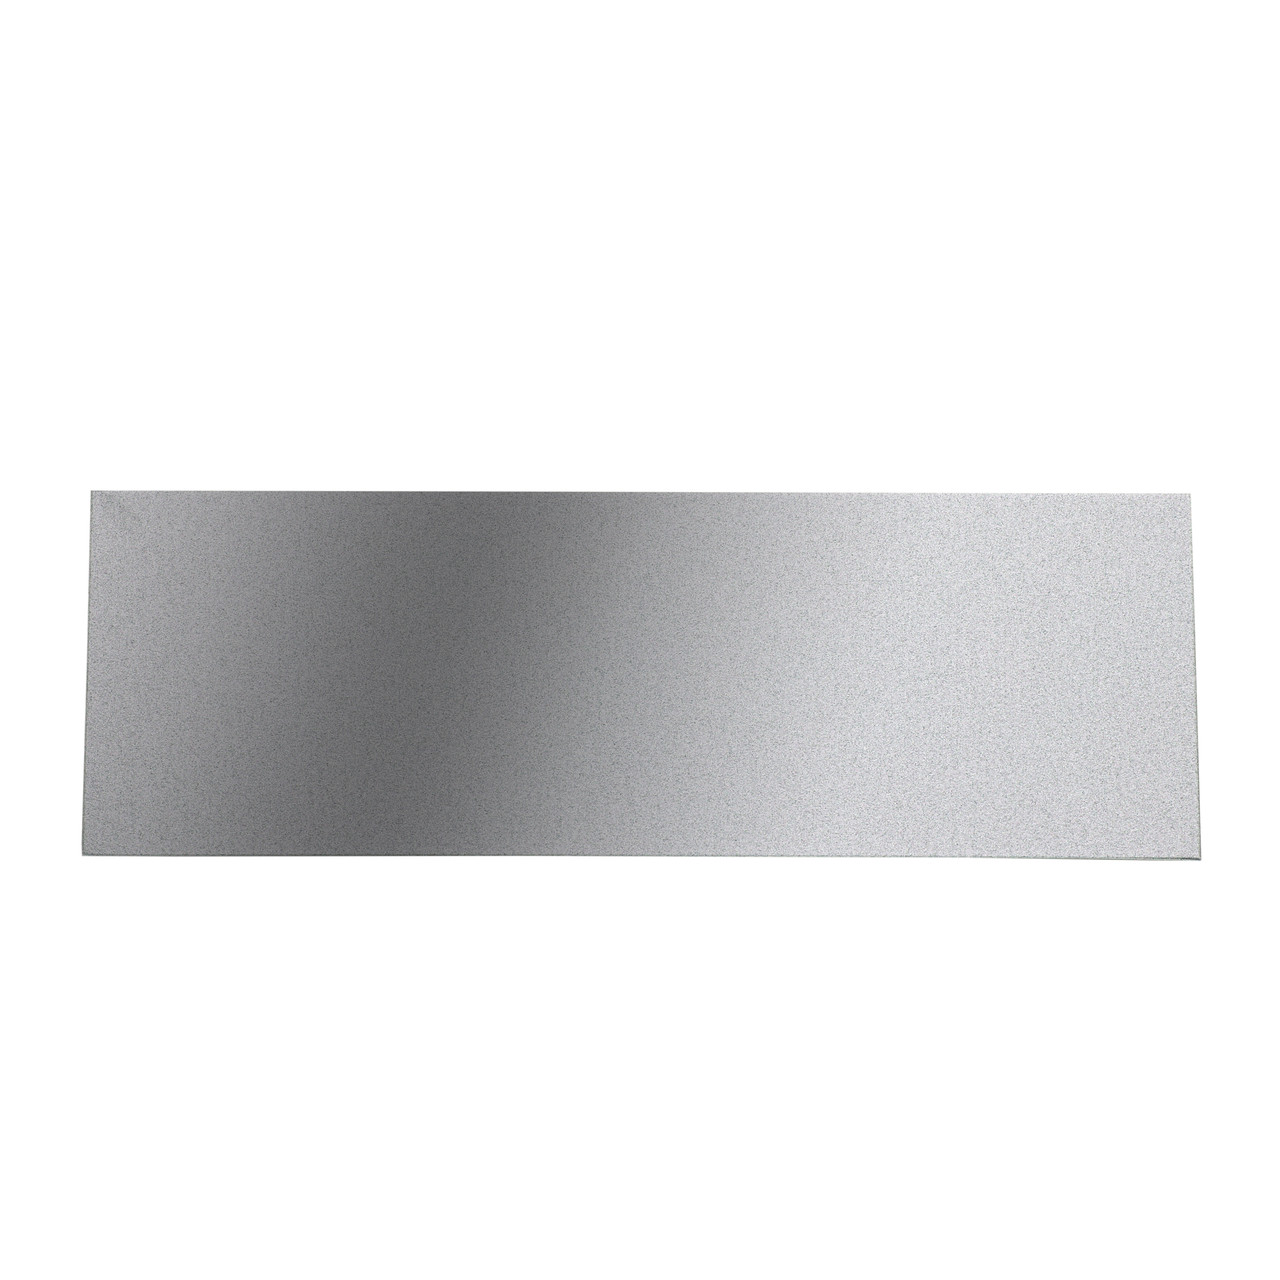 3 x 5 Blank Metal Laser Plate